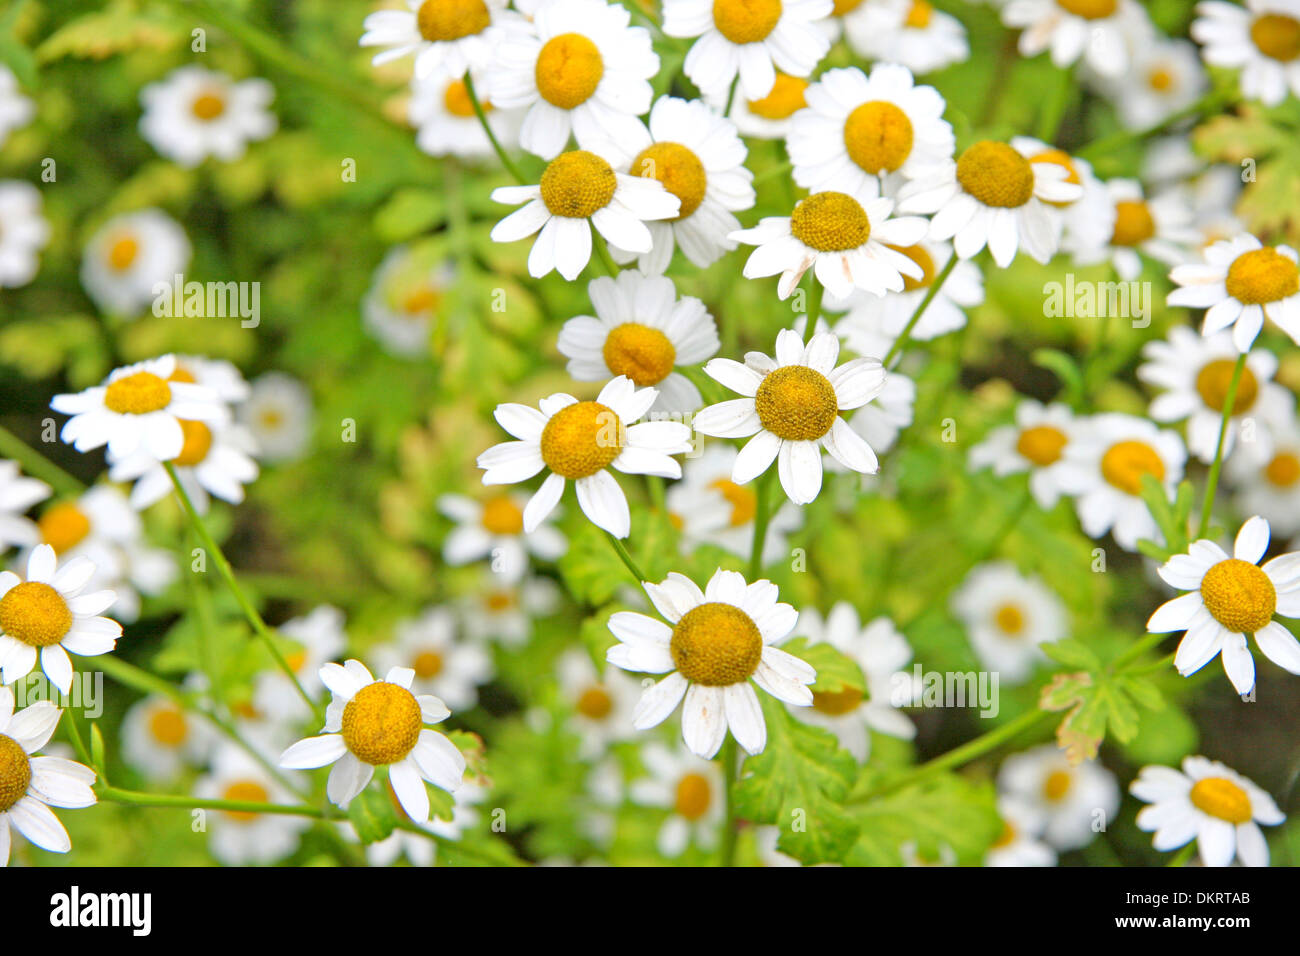 Gänseblümchen wachsen in einem Garten. Viele kleine Blüten mit weißen Blütenblättern & gelben Zentren, vor einem grünen Hintergrund der Vegetation. Stockfoto